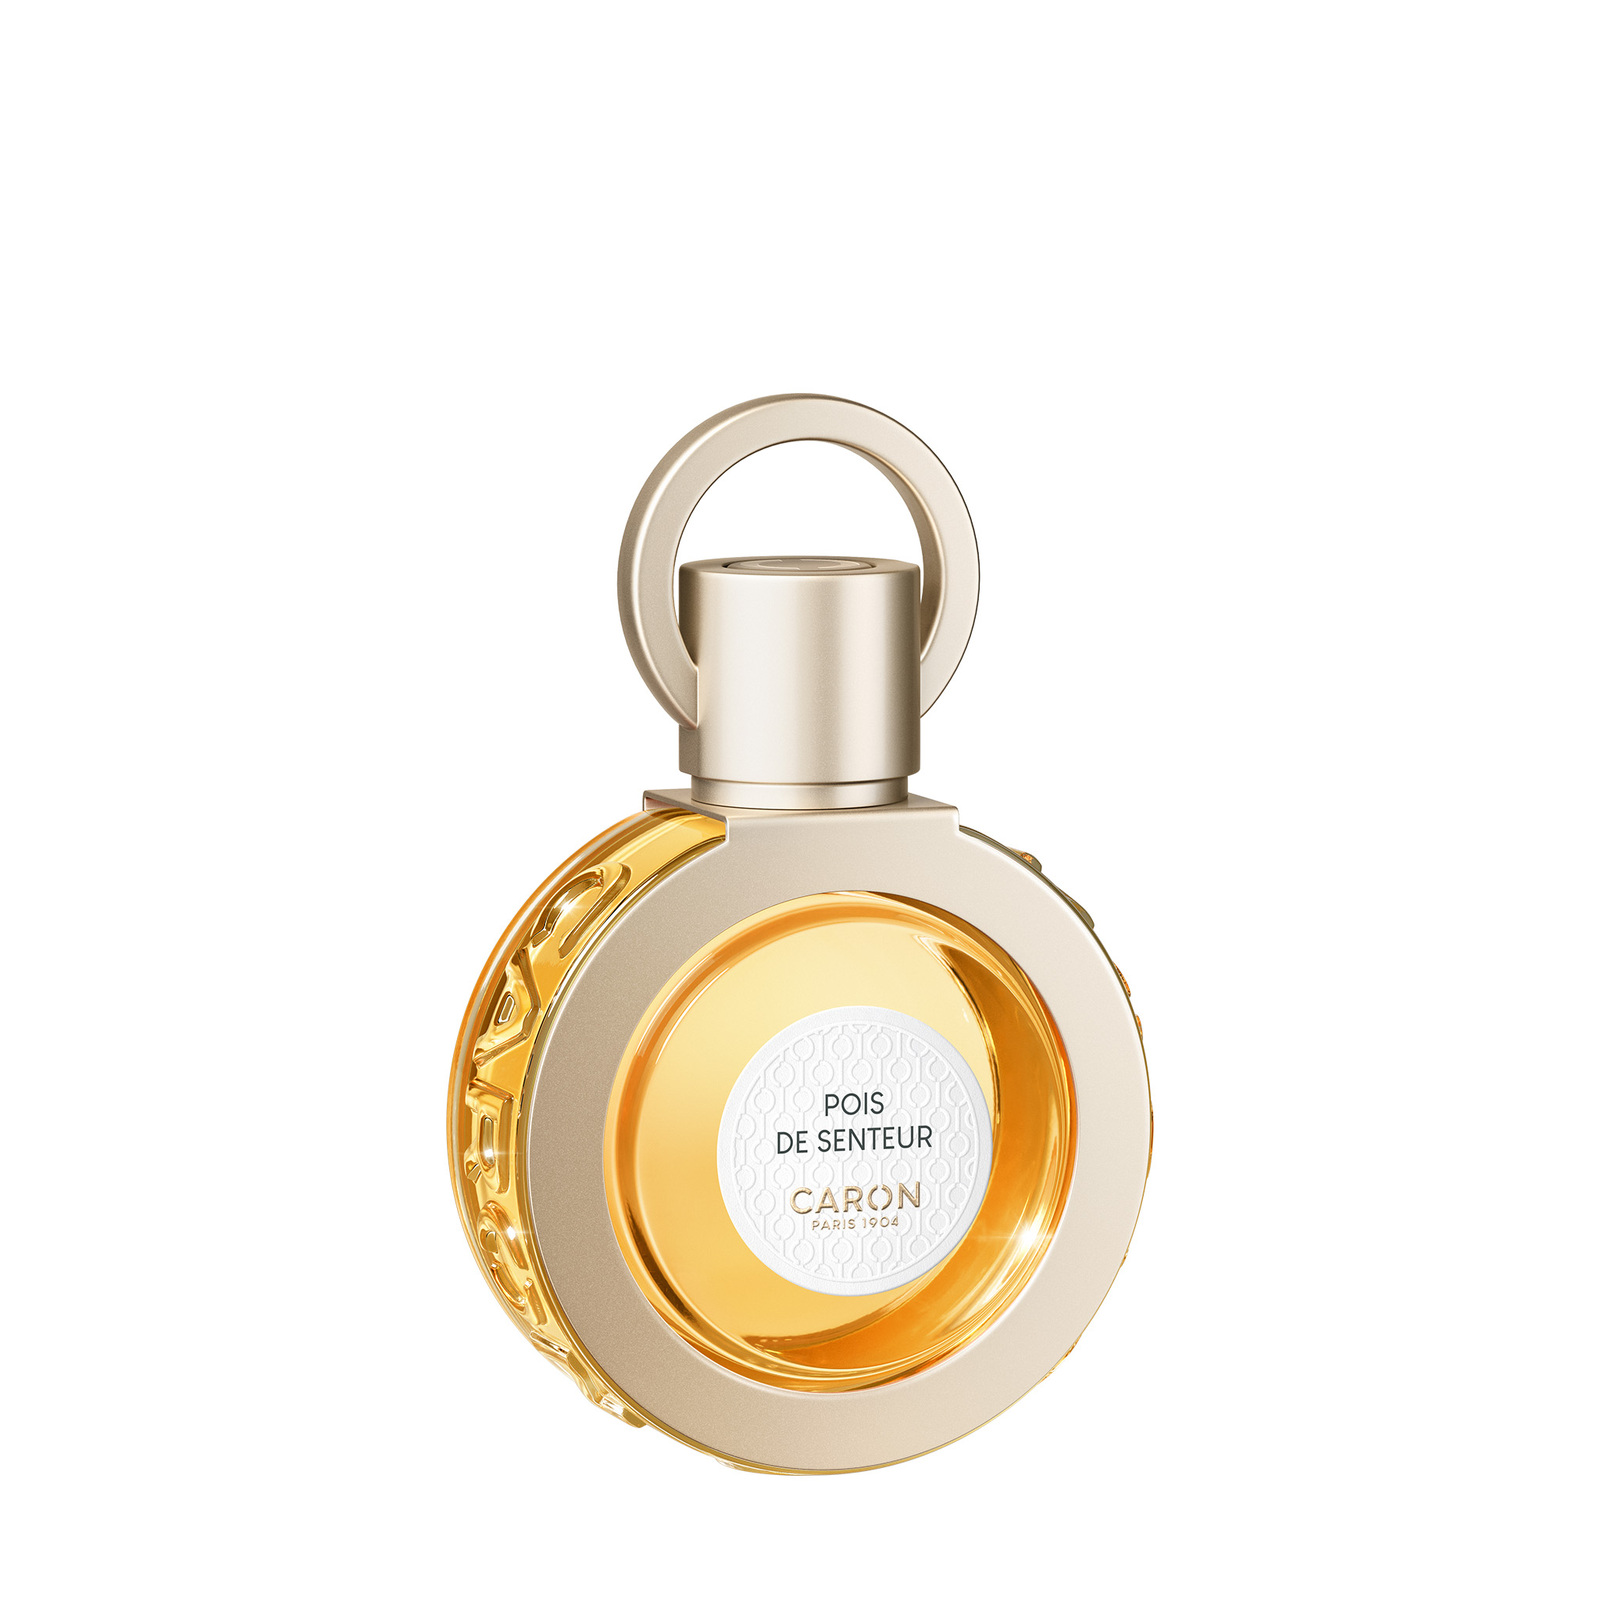 CARON Pois De Senteur Perfume 30ml Refillable